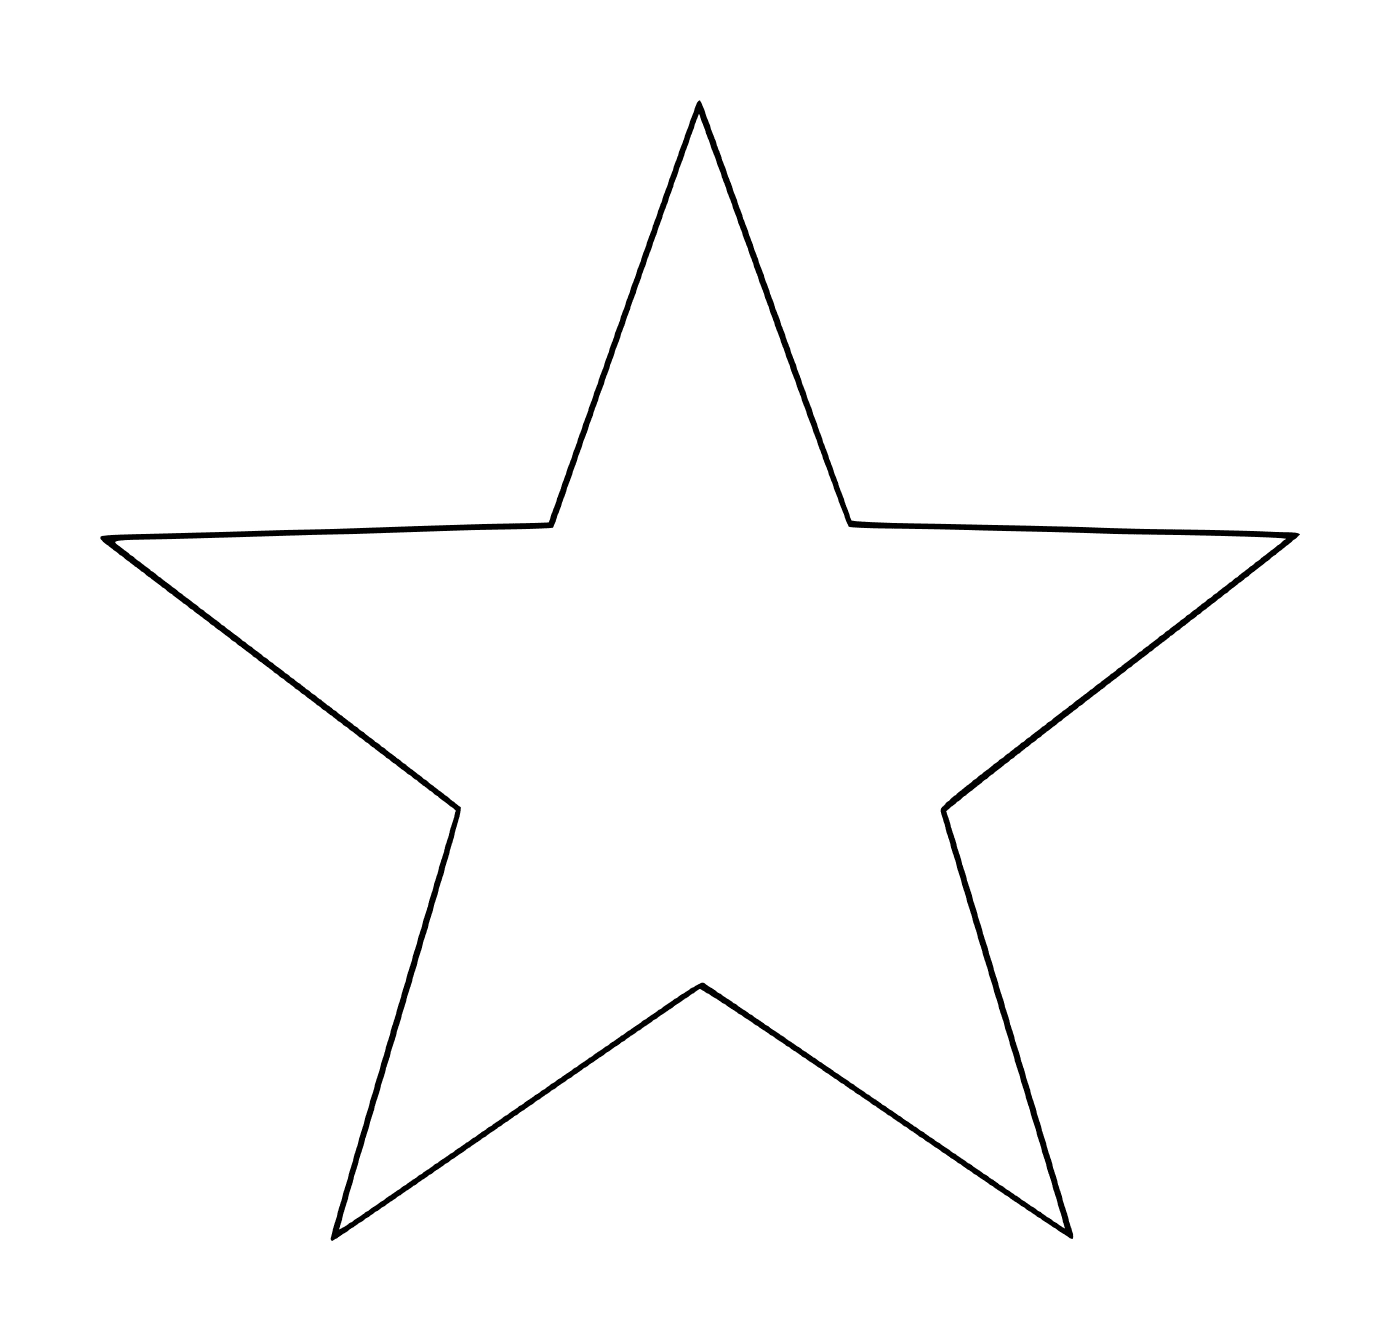  Una estrella de 5 ramas fácil de hacer para los niños 